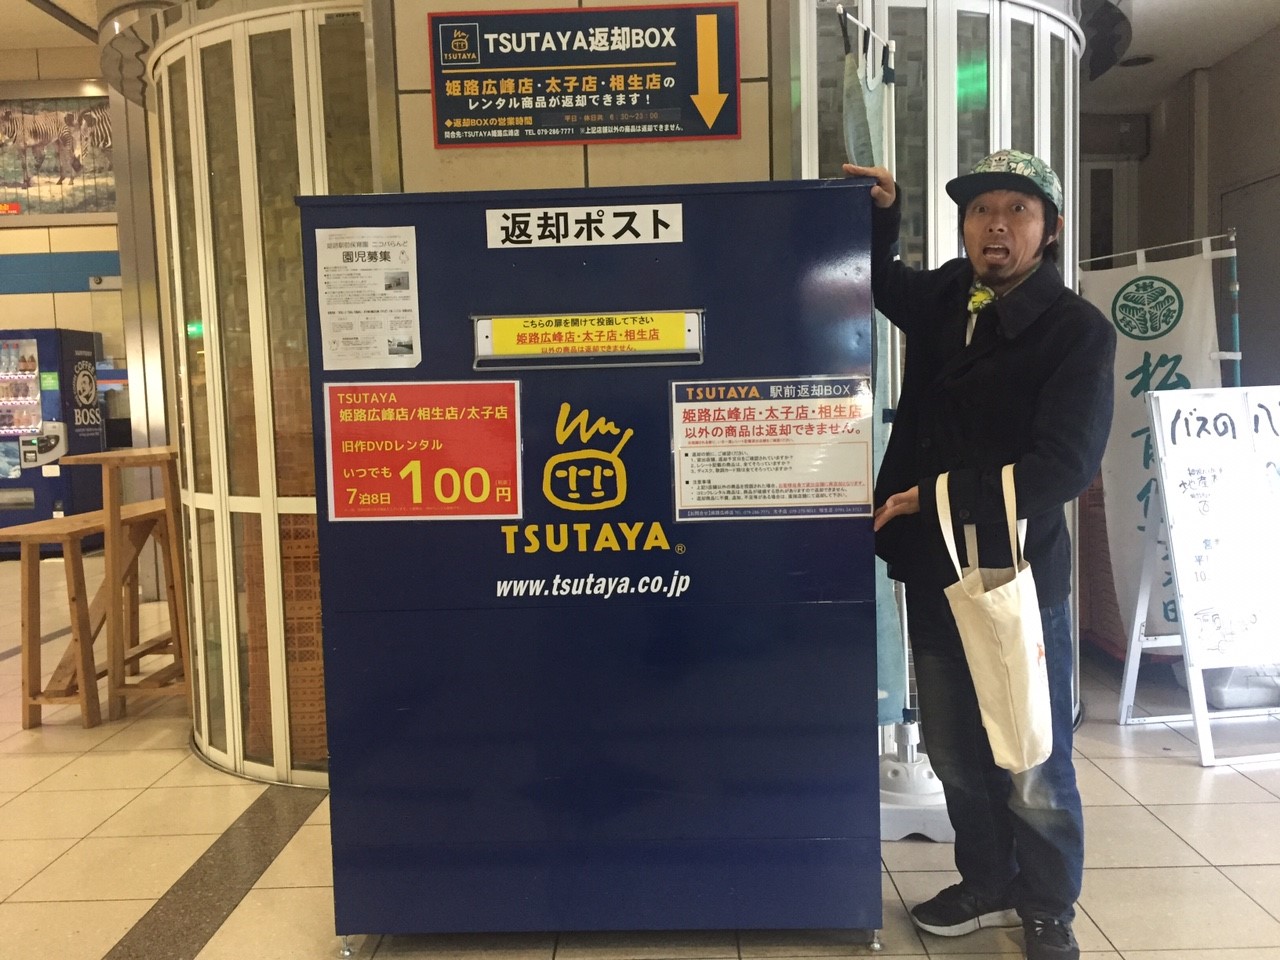 知らなかった 姫路駅前にtsutayaの返却boxがあった 姫路市のローカル情報サイト 裏観光情報も